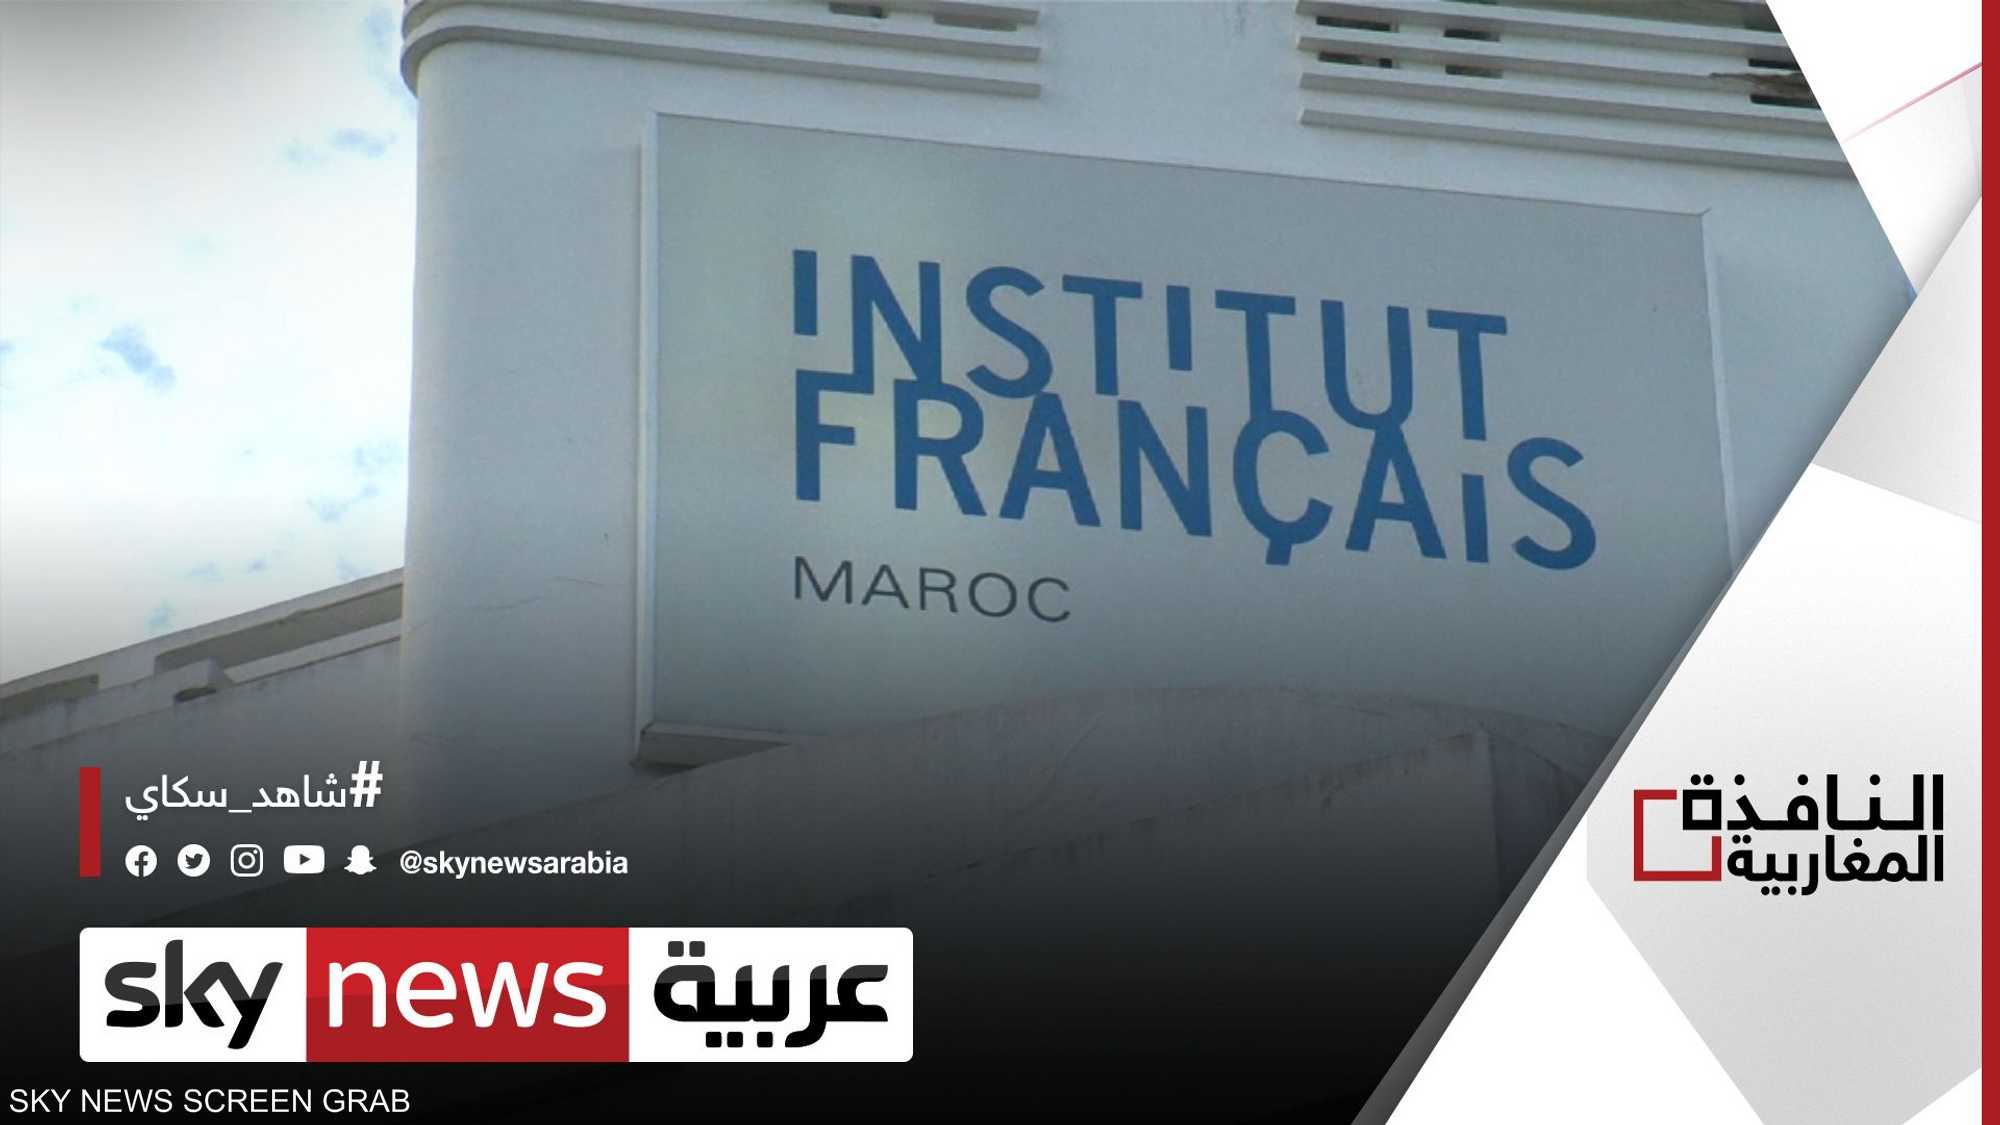 جدل في المغرب حول مقاطعة "الفرنسية" بالتعليم